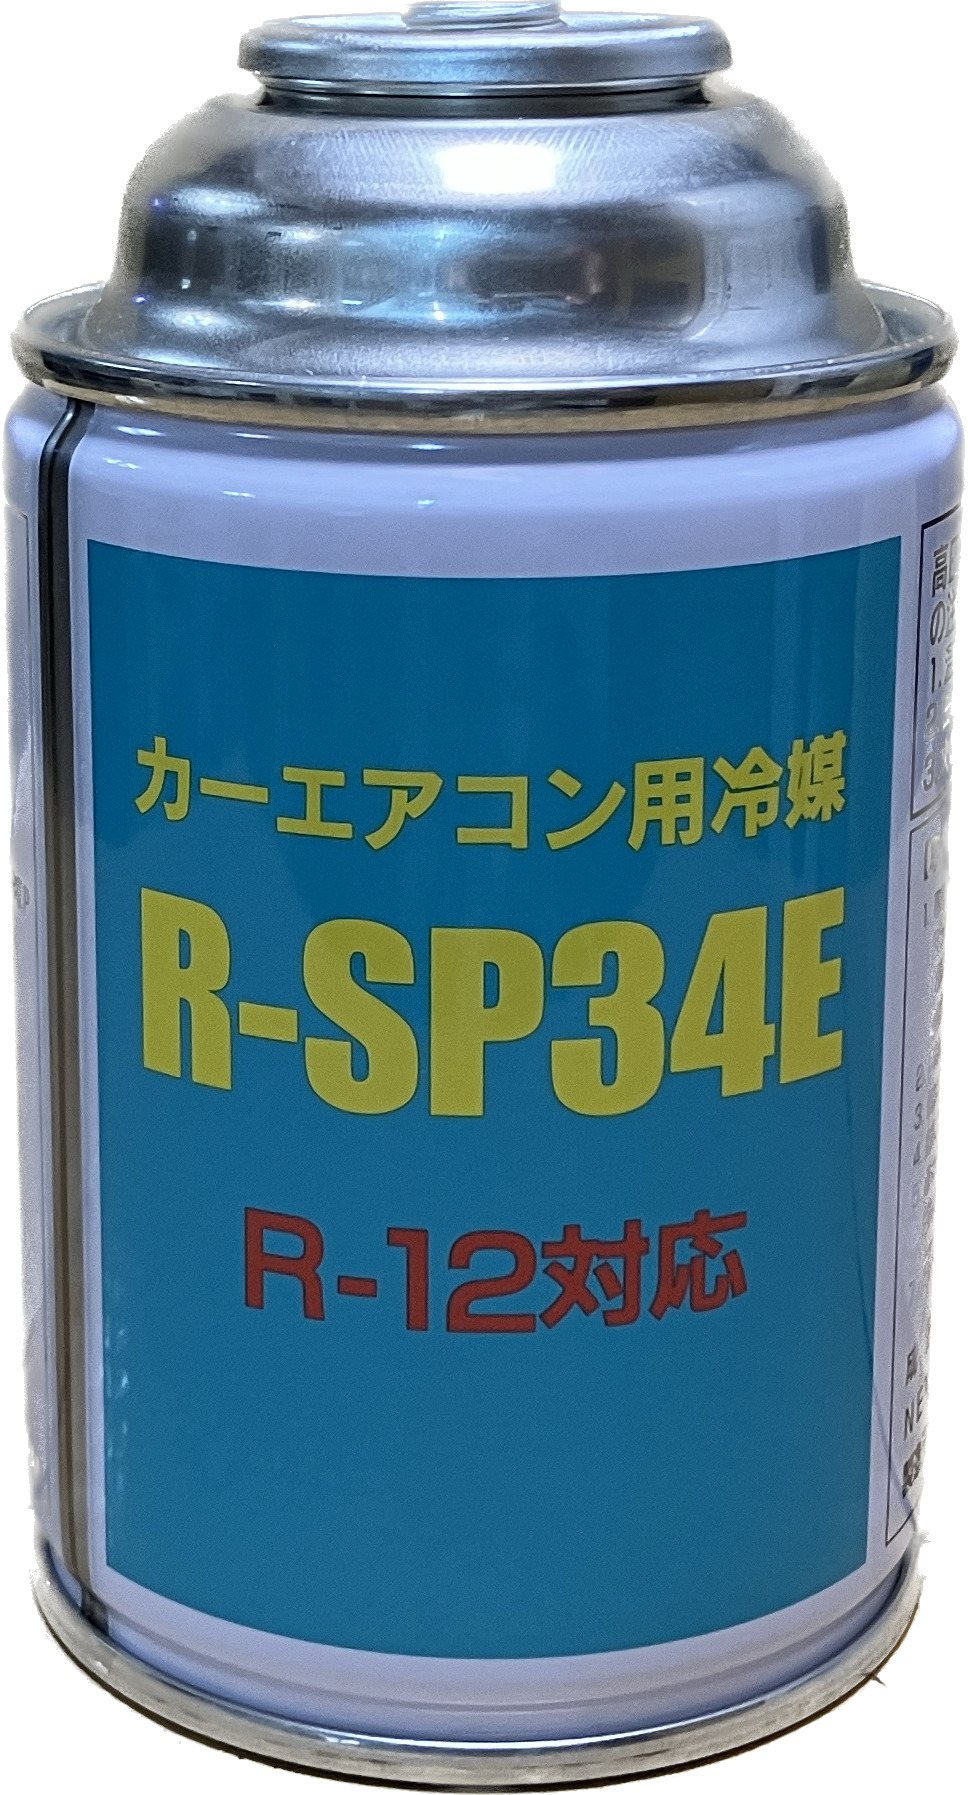 R-12タイプ R-SP34Eカーエアコン用冷媒200g　1缶